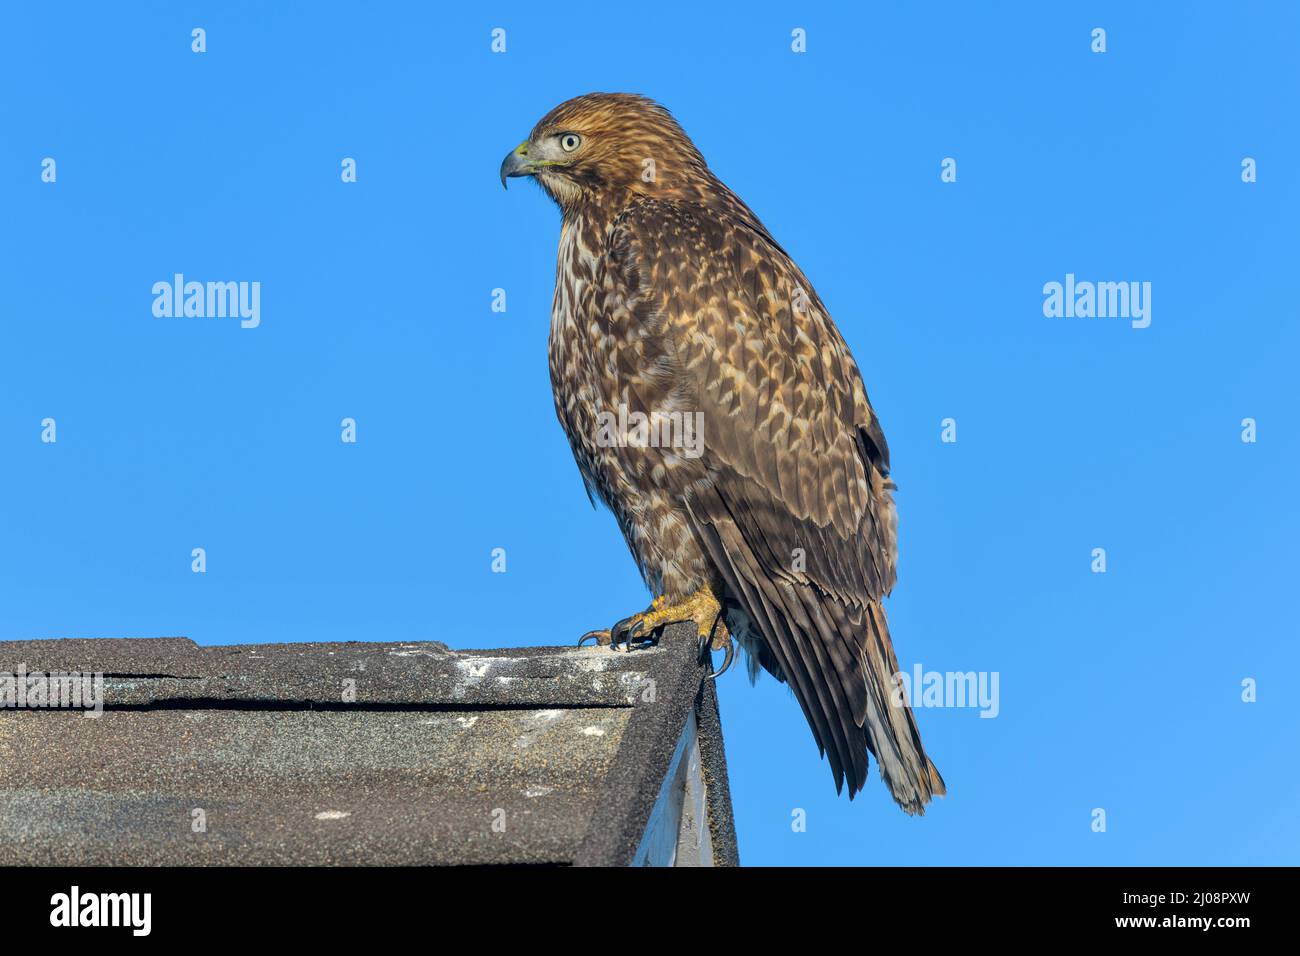 Hawk a coda rossa - una vista laterale ravvicinata di un falco a coda rossa che si aggirava su un'estremità di cresta di un tetto di una casa residenziale. Lakewood, Colorado, Stati Uniti. Foto Stock